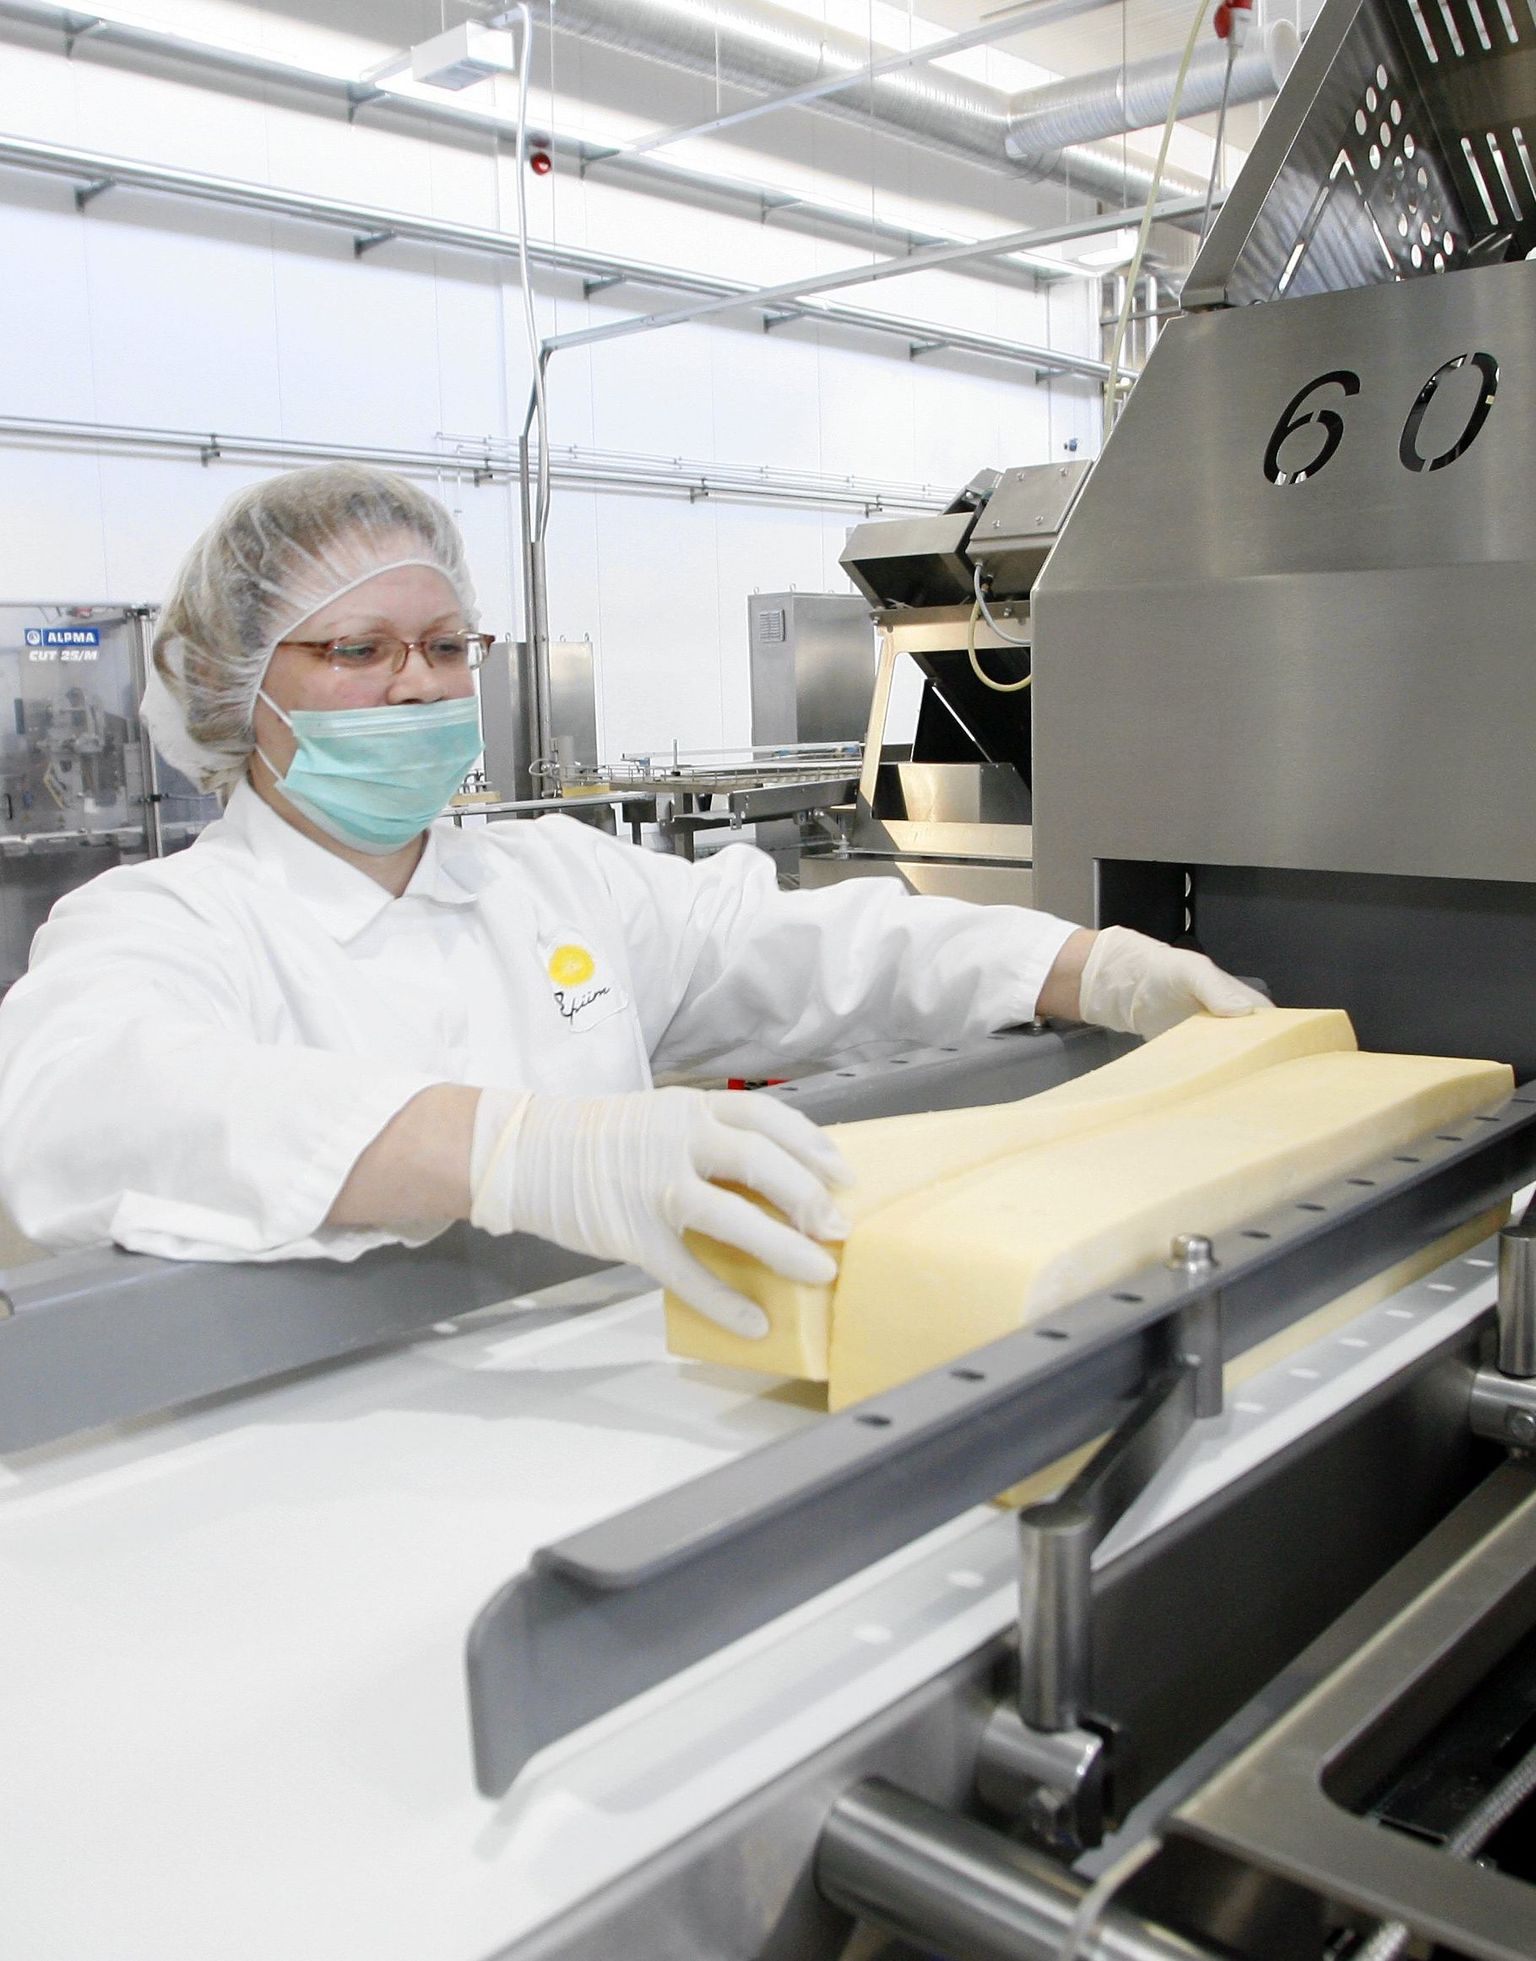 E-Piima Põltsamaa meierei on suuruselt teine-kolmas juustu eksportöör Venemaale. Pildil on meierei uus juustuliin, mis hakkas tööle veebruaris.